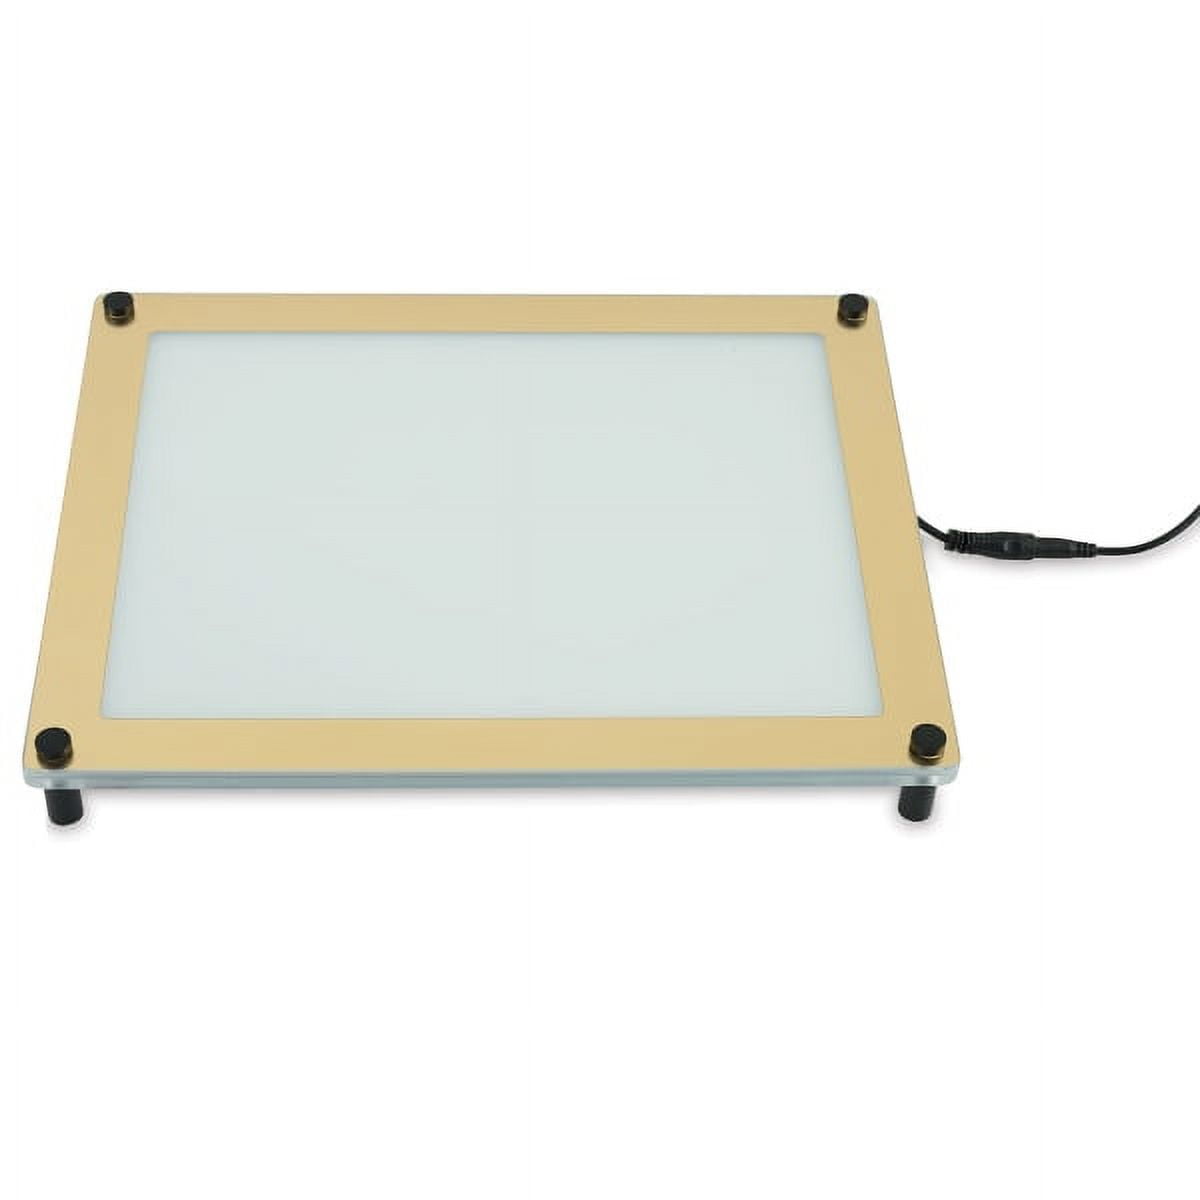 Gagne PortaTrace LED Light Table